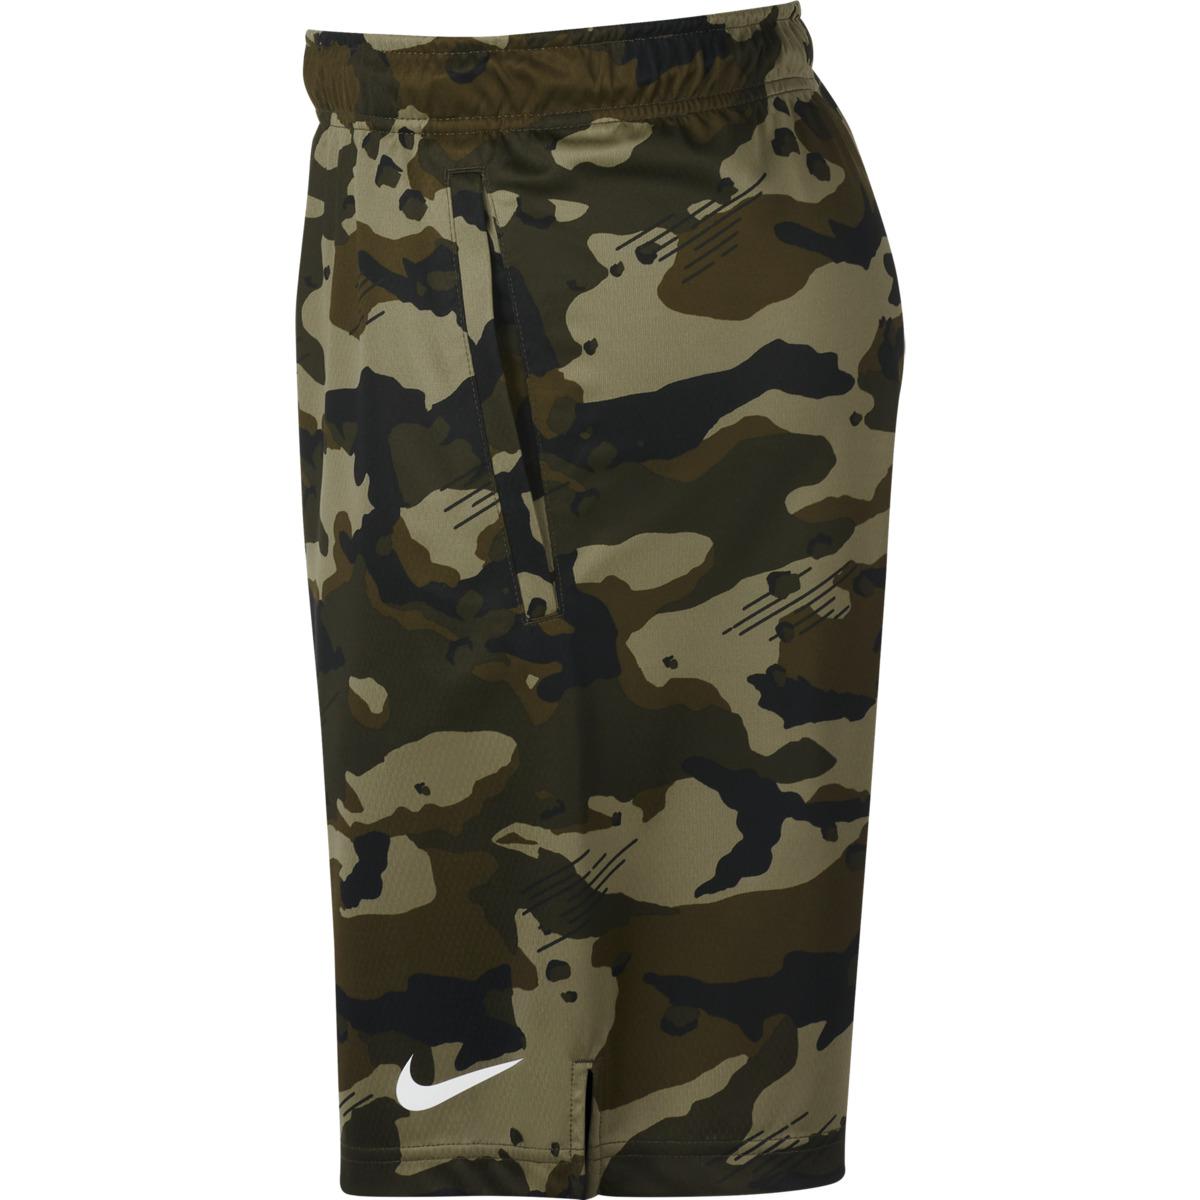 Nike Sportswear Shorts in Green Camo (Green) for Men - Save 25% - Lyst